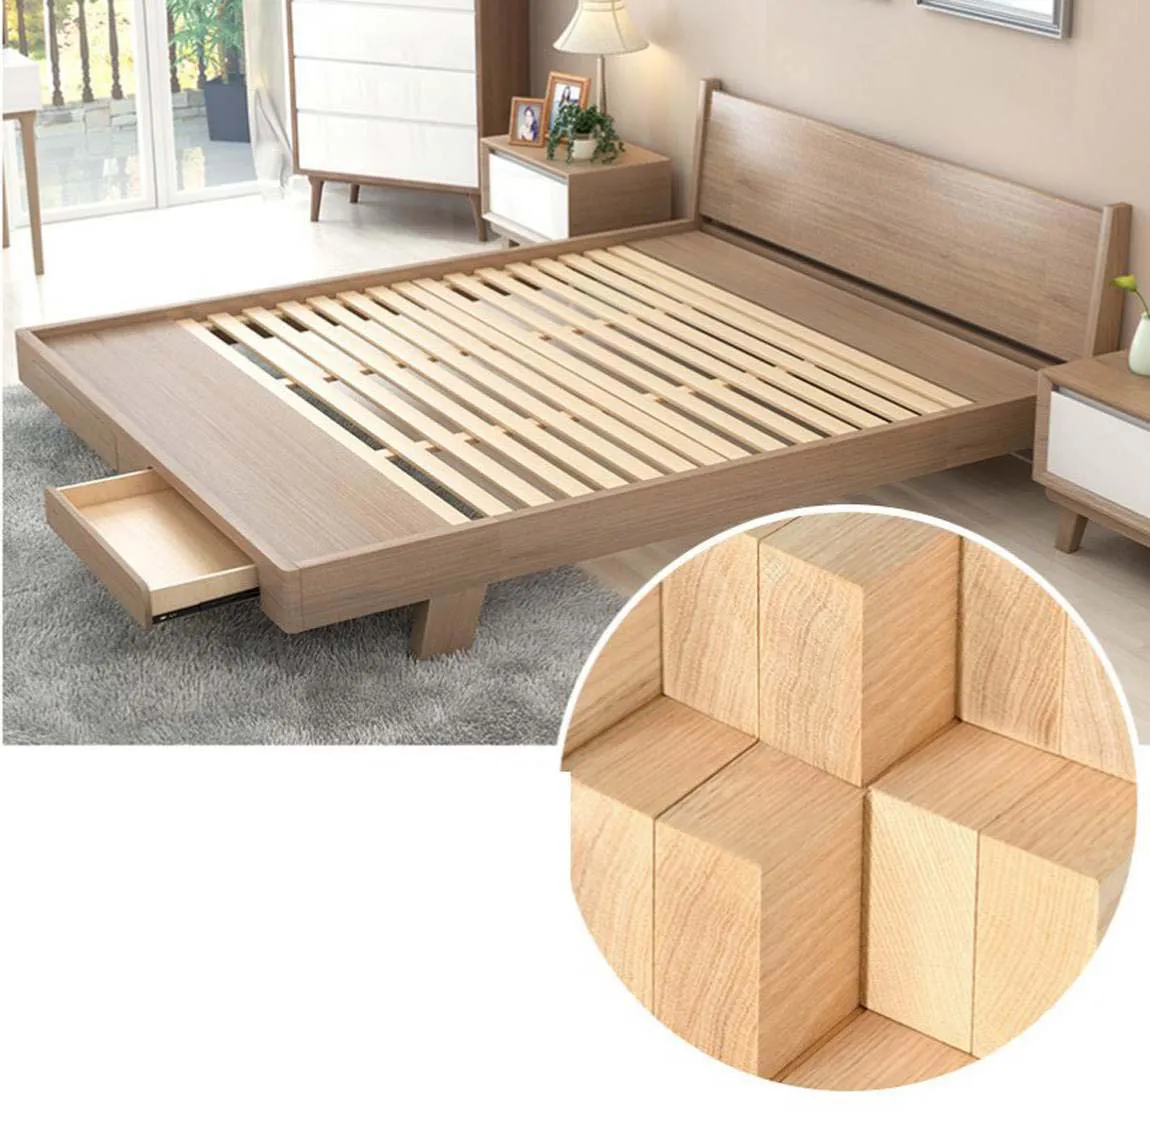 Giường ngủ gỗ có ngăn kéo chứa đồ đa năng